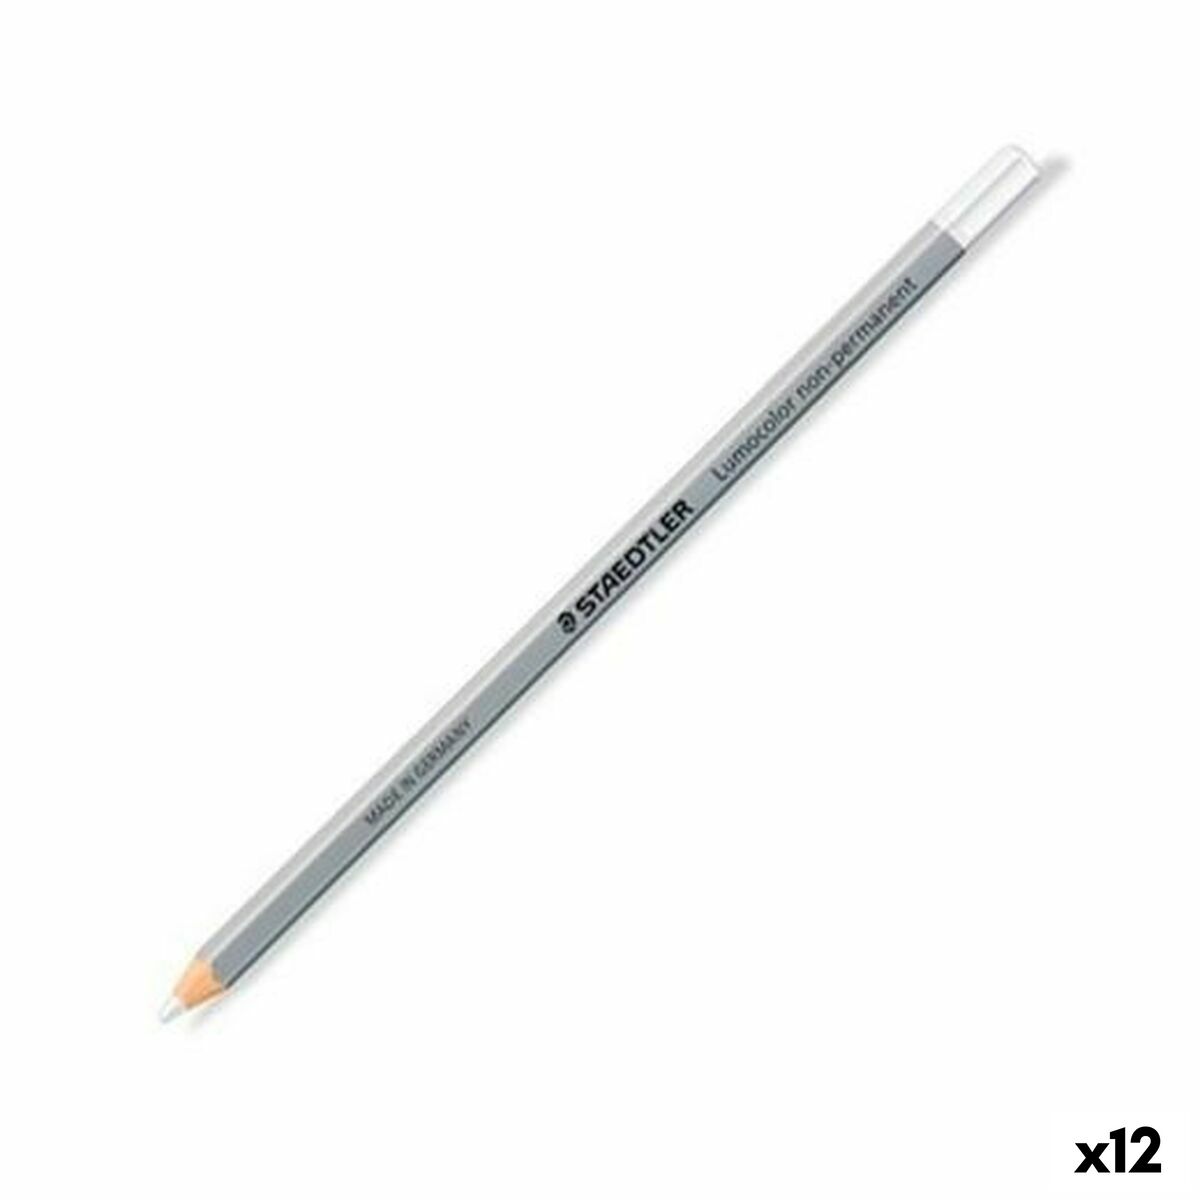 Crayon marqueur Staedtler Non-Permanent Blanc (12 Unités)